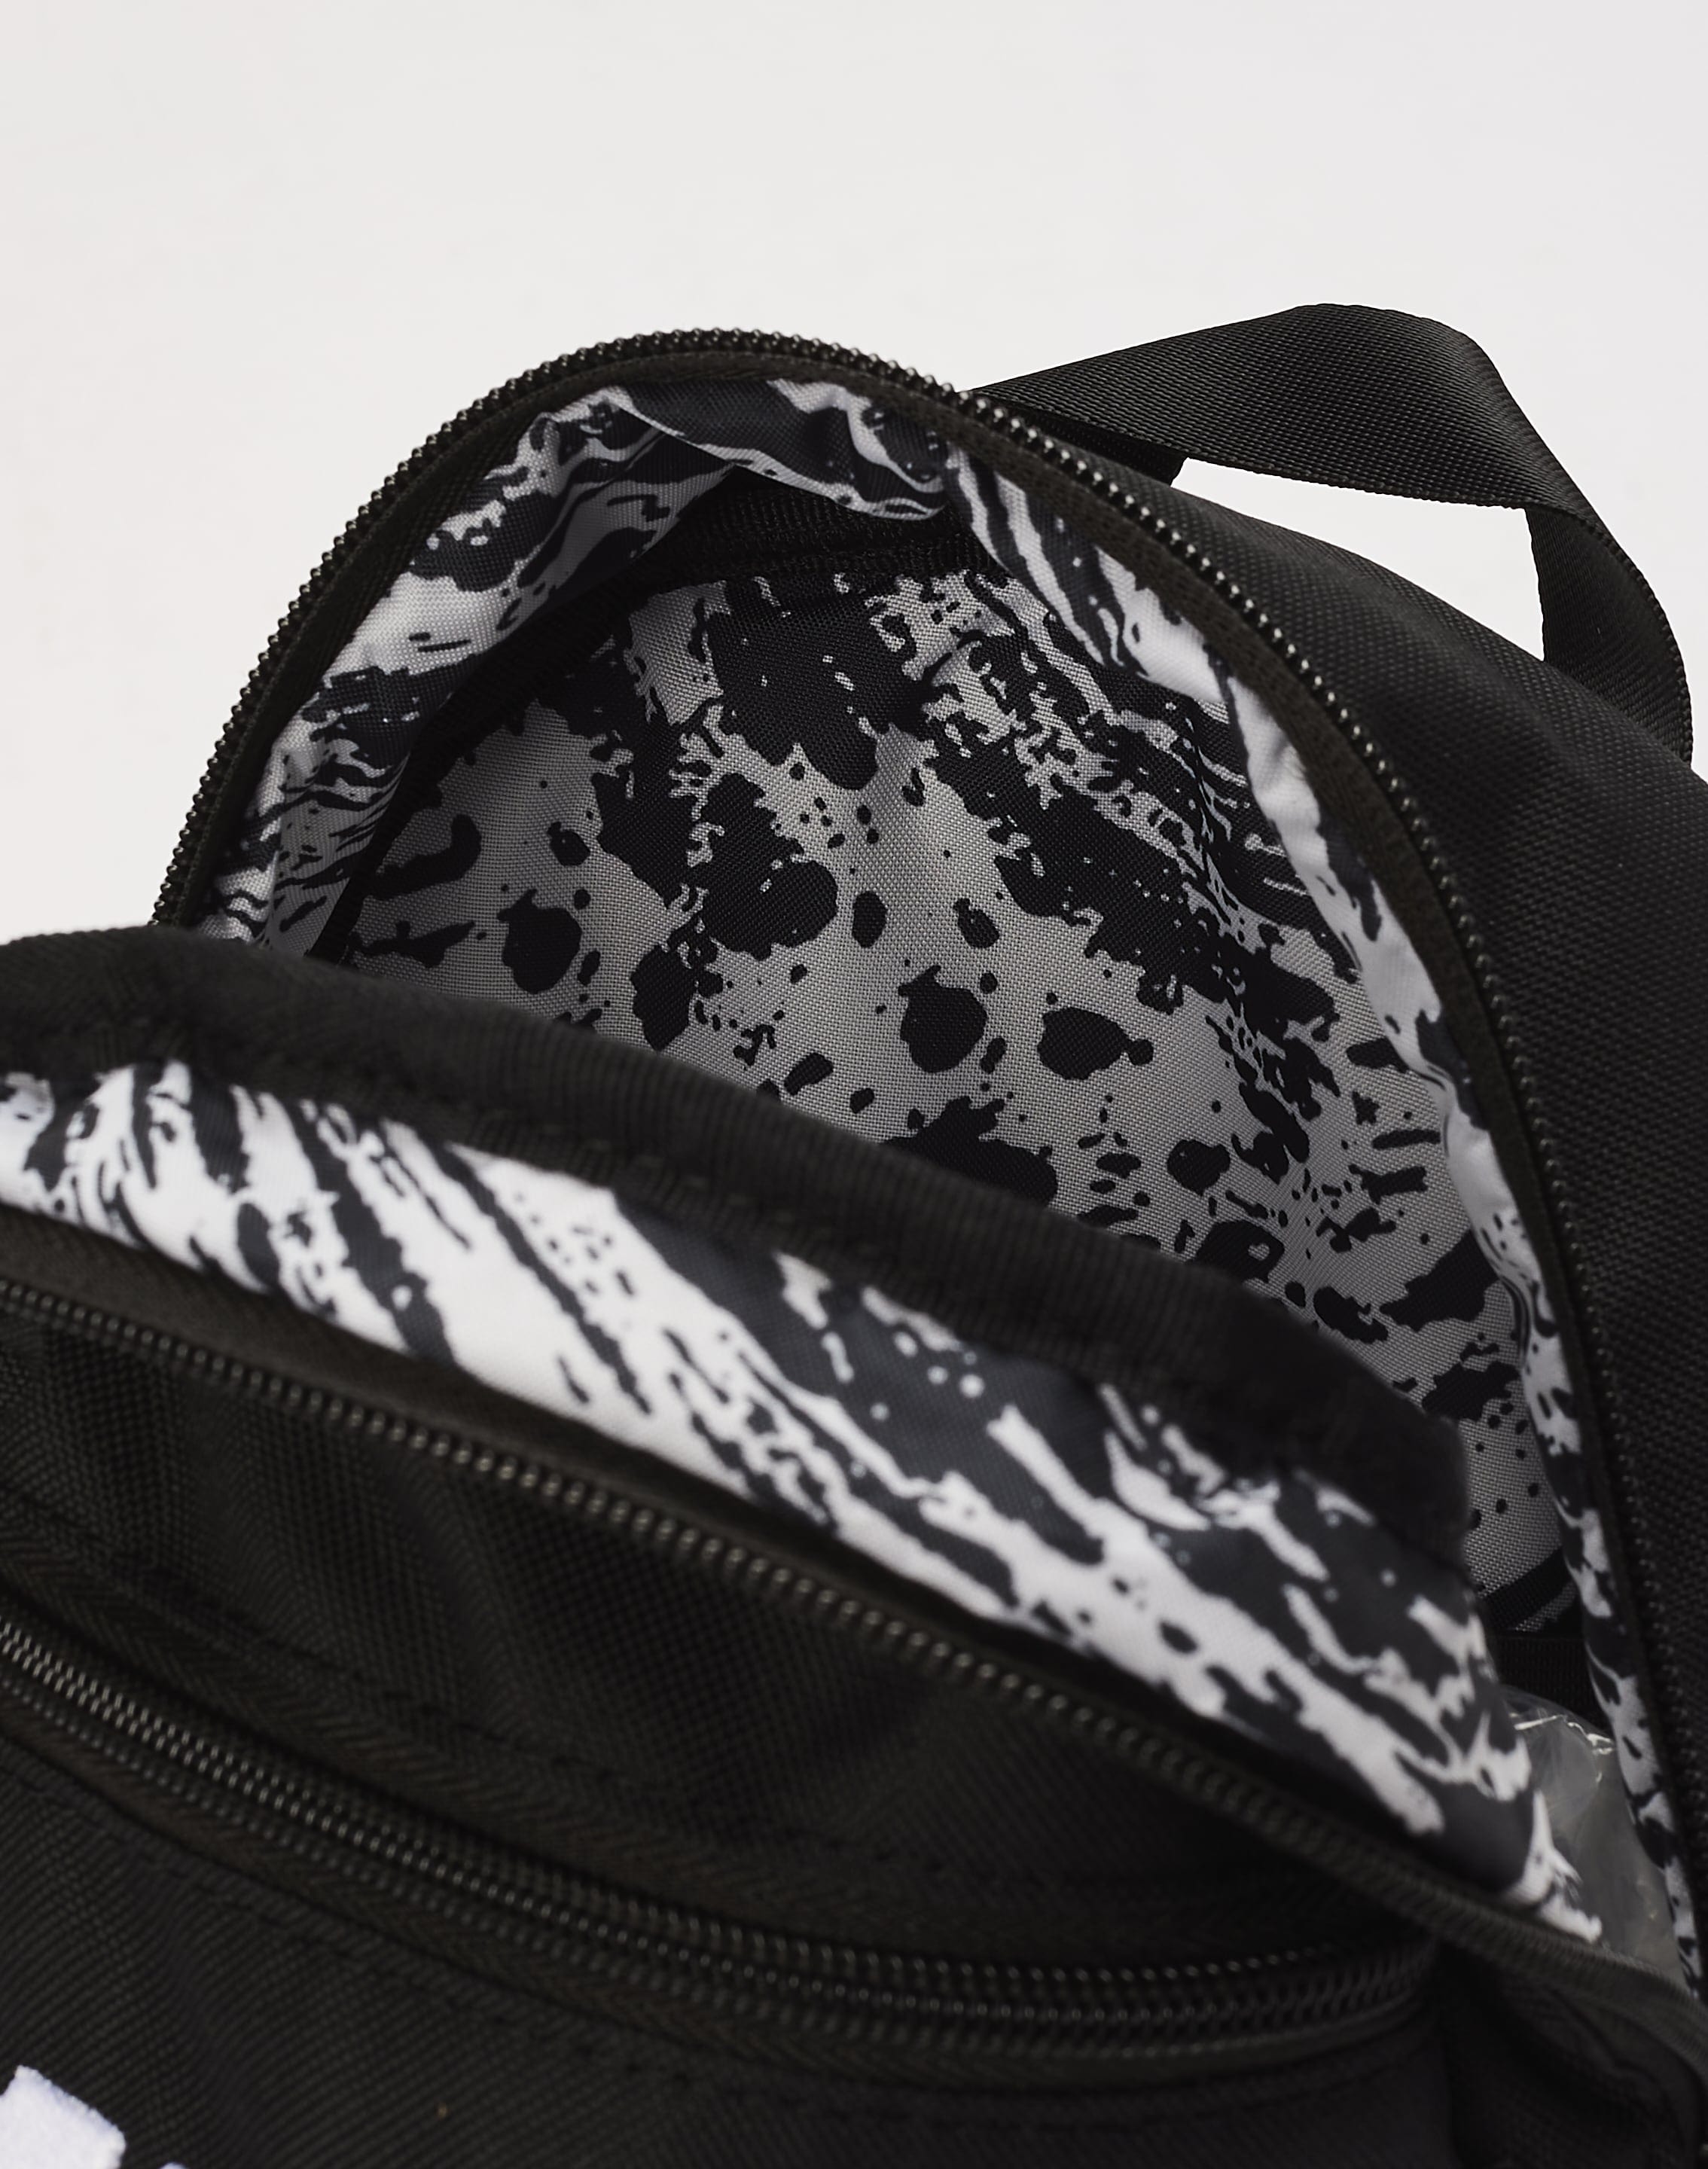 Nike Futura 365 Mini Backpack – DTLR